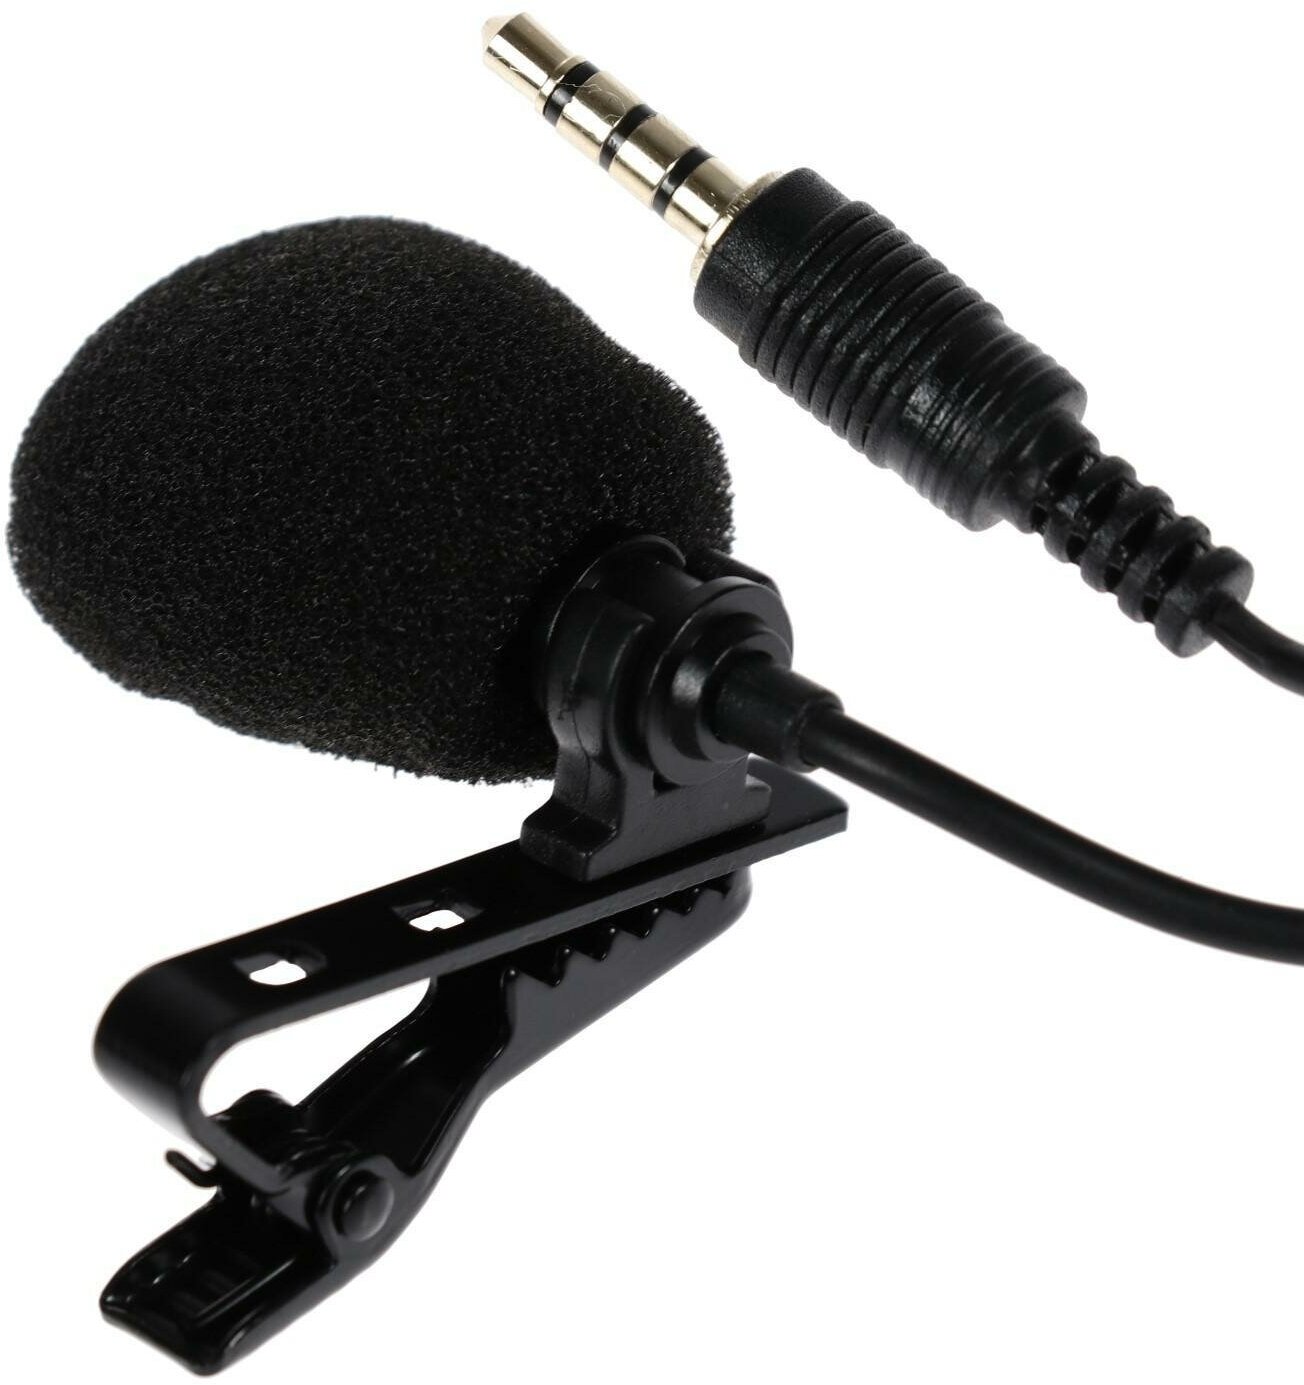 Микрофон на прищепке G-101, 100-16000 Гц, -32 дБ, 2.2 кОм, Jack 3.5 мм, 1.5 м, черный